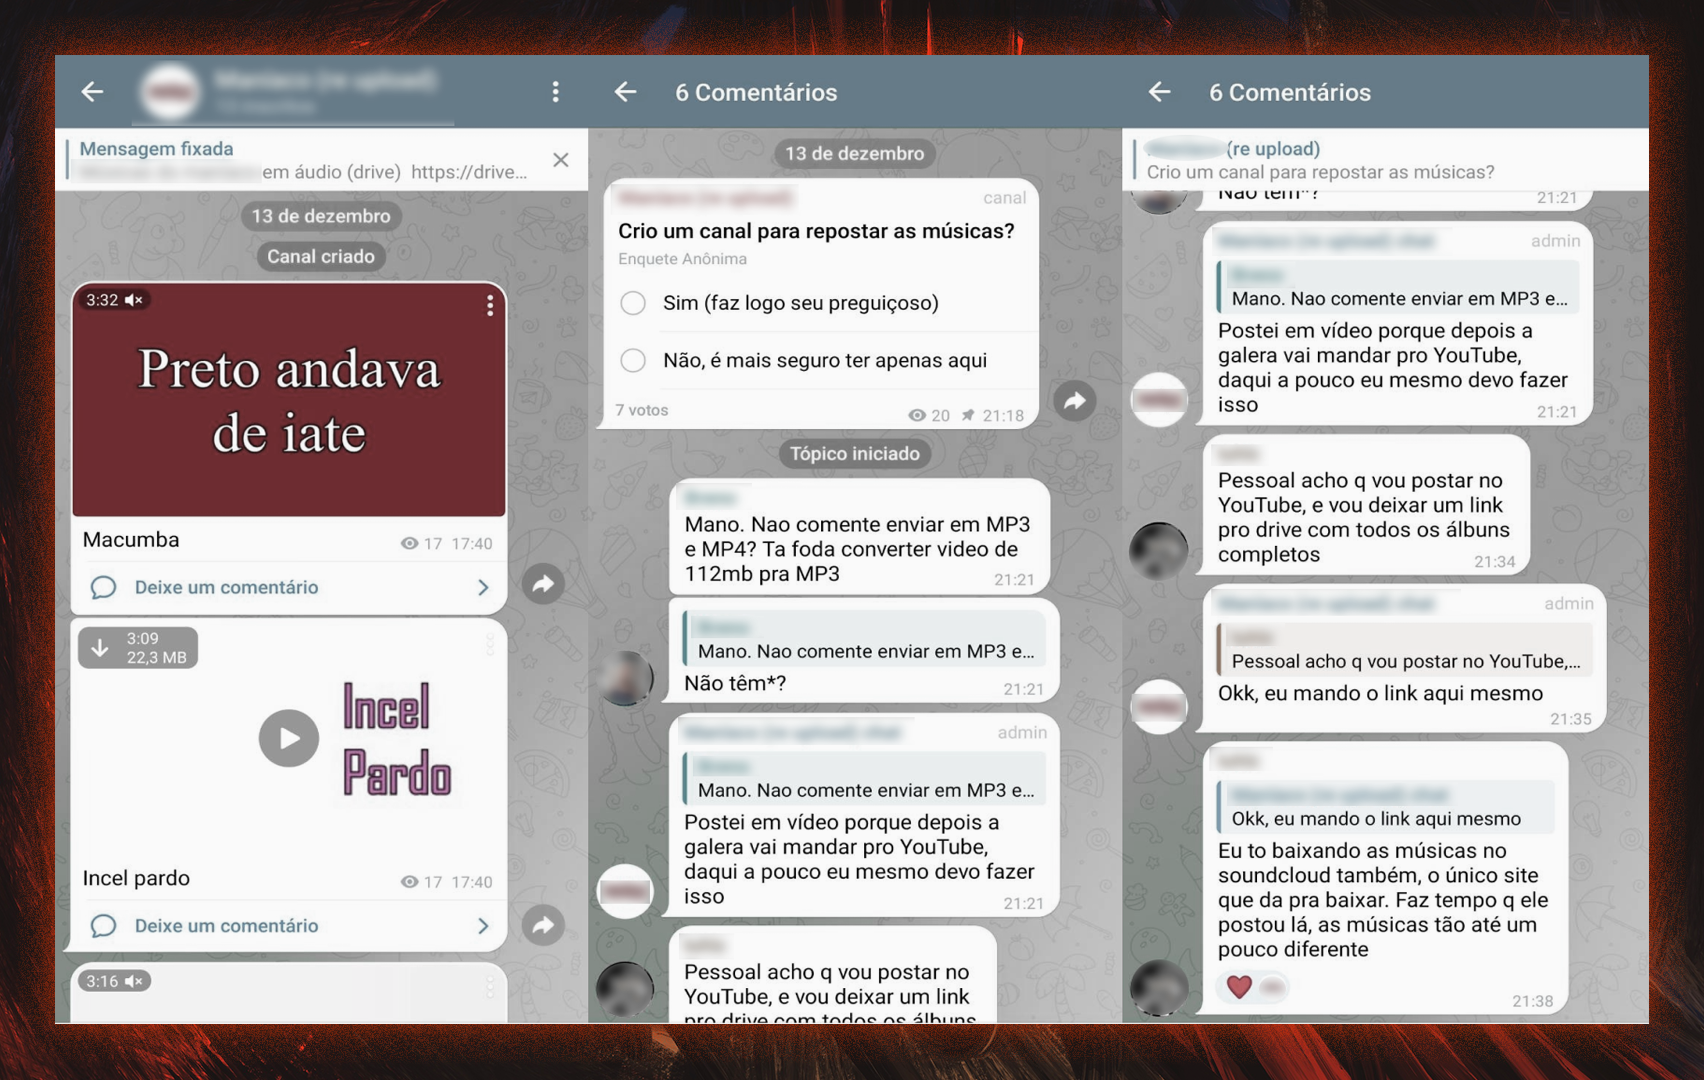 Print de comunidade no Telegram mostra diálogo entre fãs de Maníaco, que discutem ações para salvar suas músicas. Além da conversa, é possível ver o endereço parcial de um drive, alguns vídeos e uma enquete.